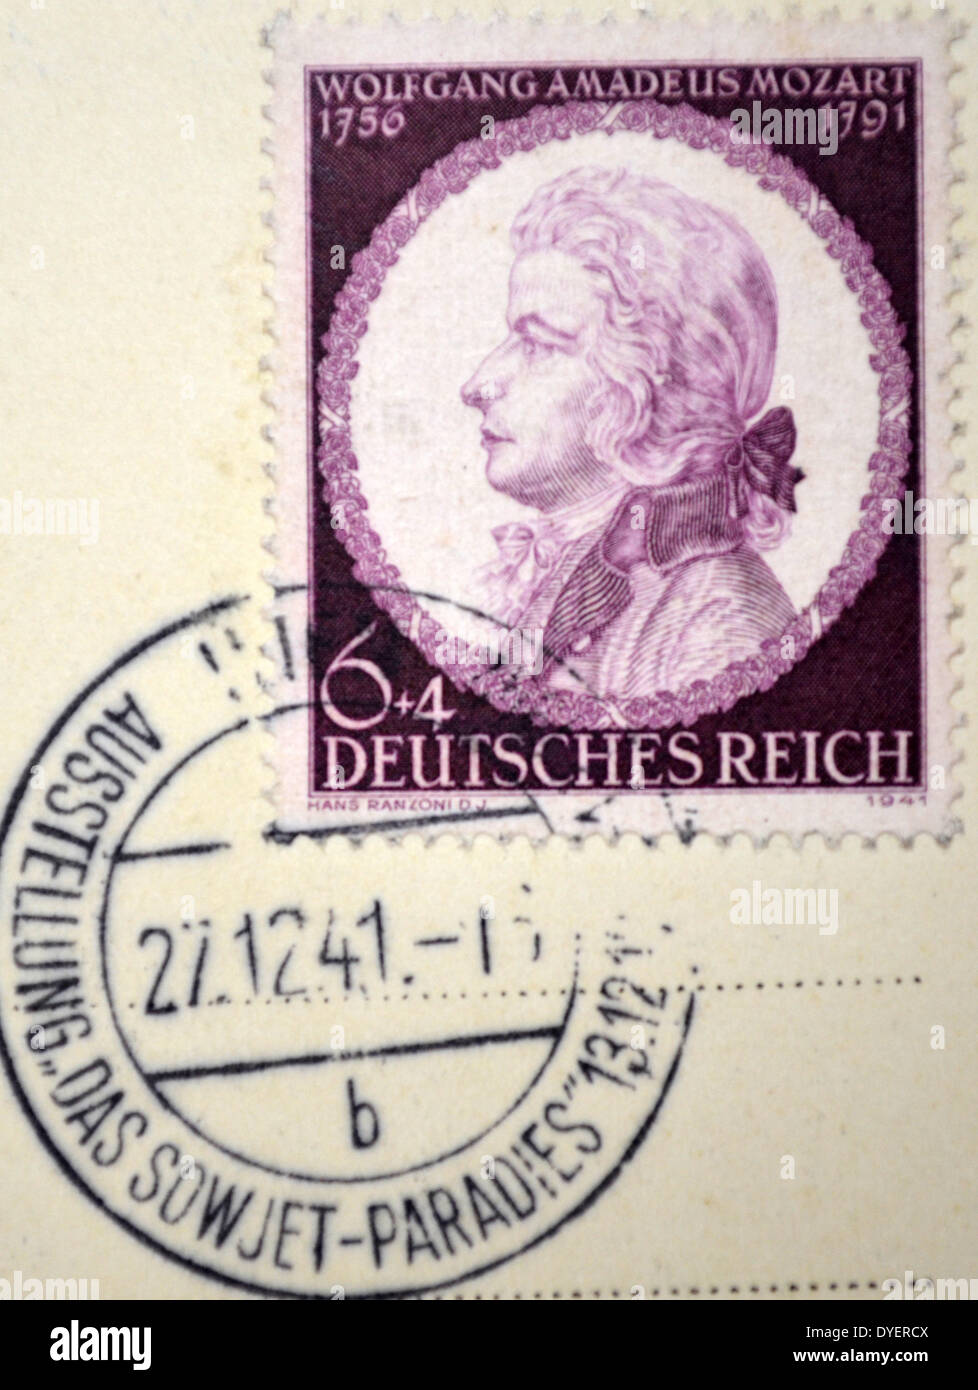 Timbre allemand de l'Autriche, avec le portrait de Wolfgang Mozart le compositeur. 1941 : La Seconde Guerre mondiale. Banque D'Images